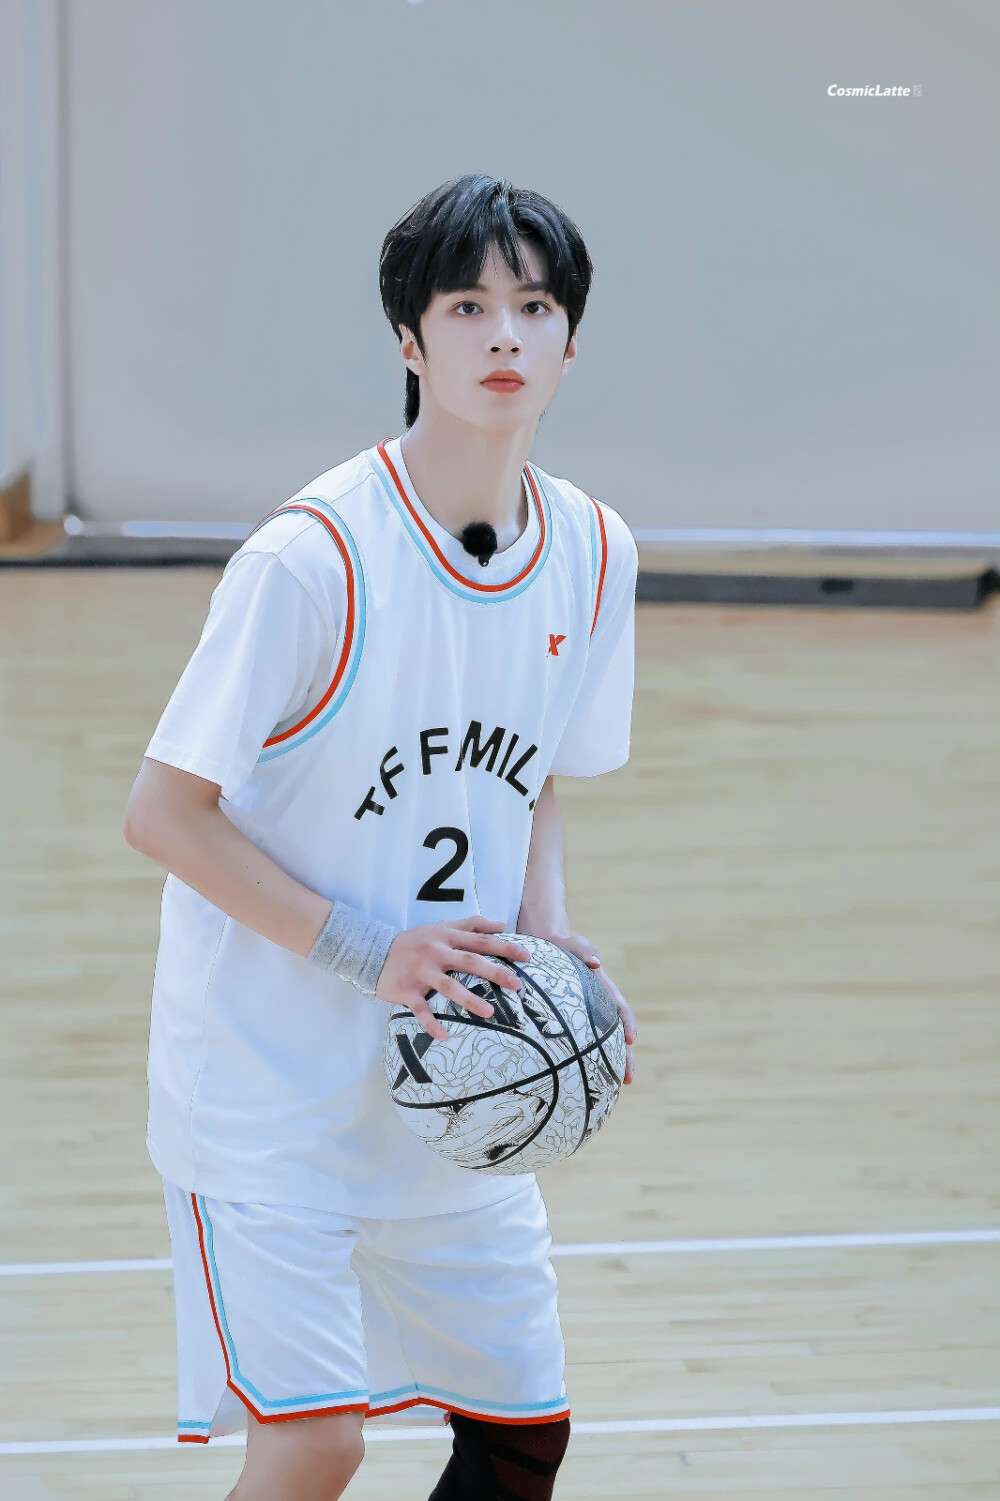 刘耀文打篮球神图图片